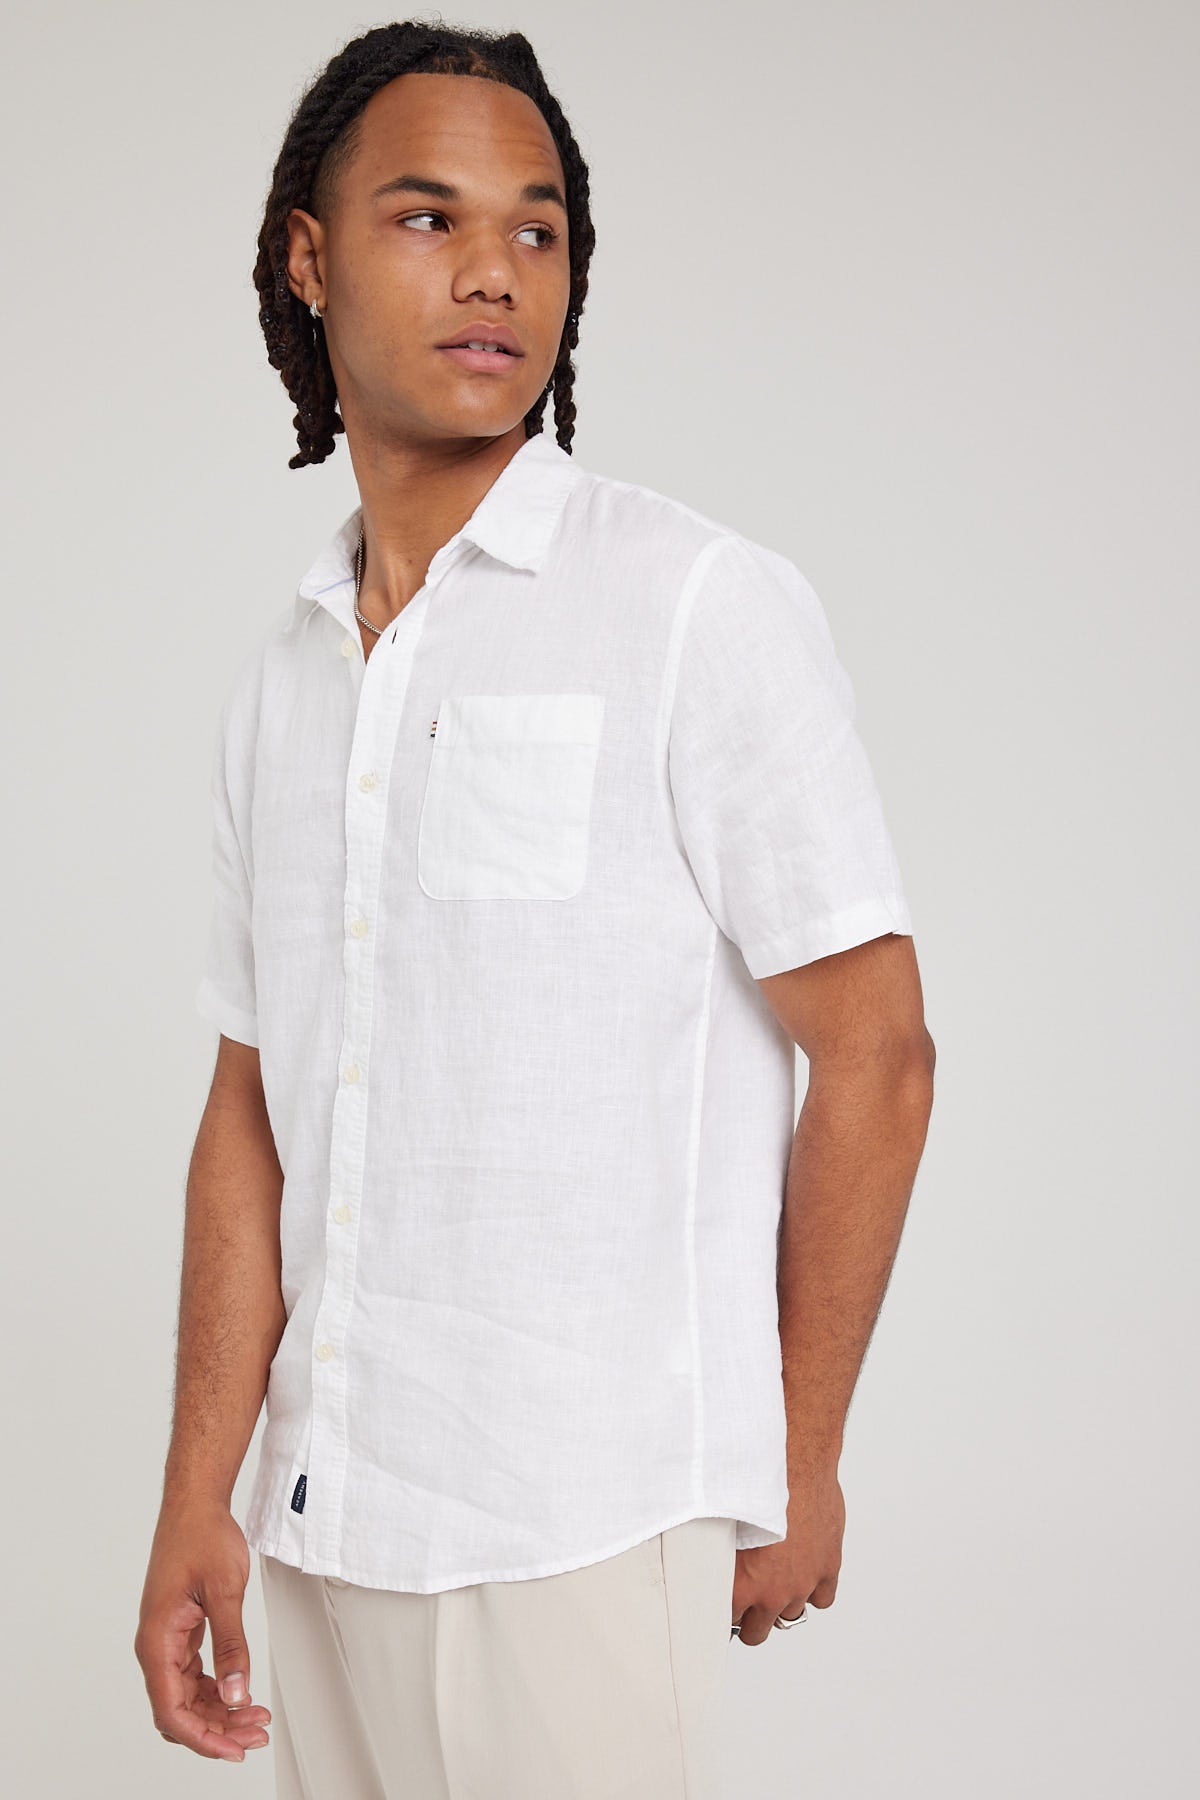 Academy Brand Hampton SS Shirt White – Universal Store